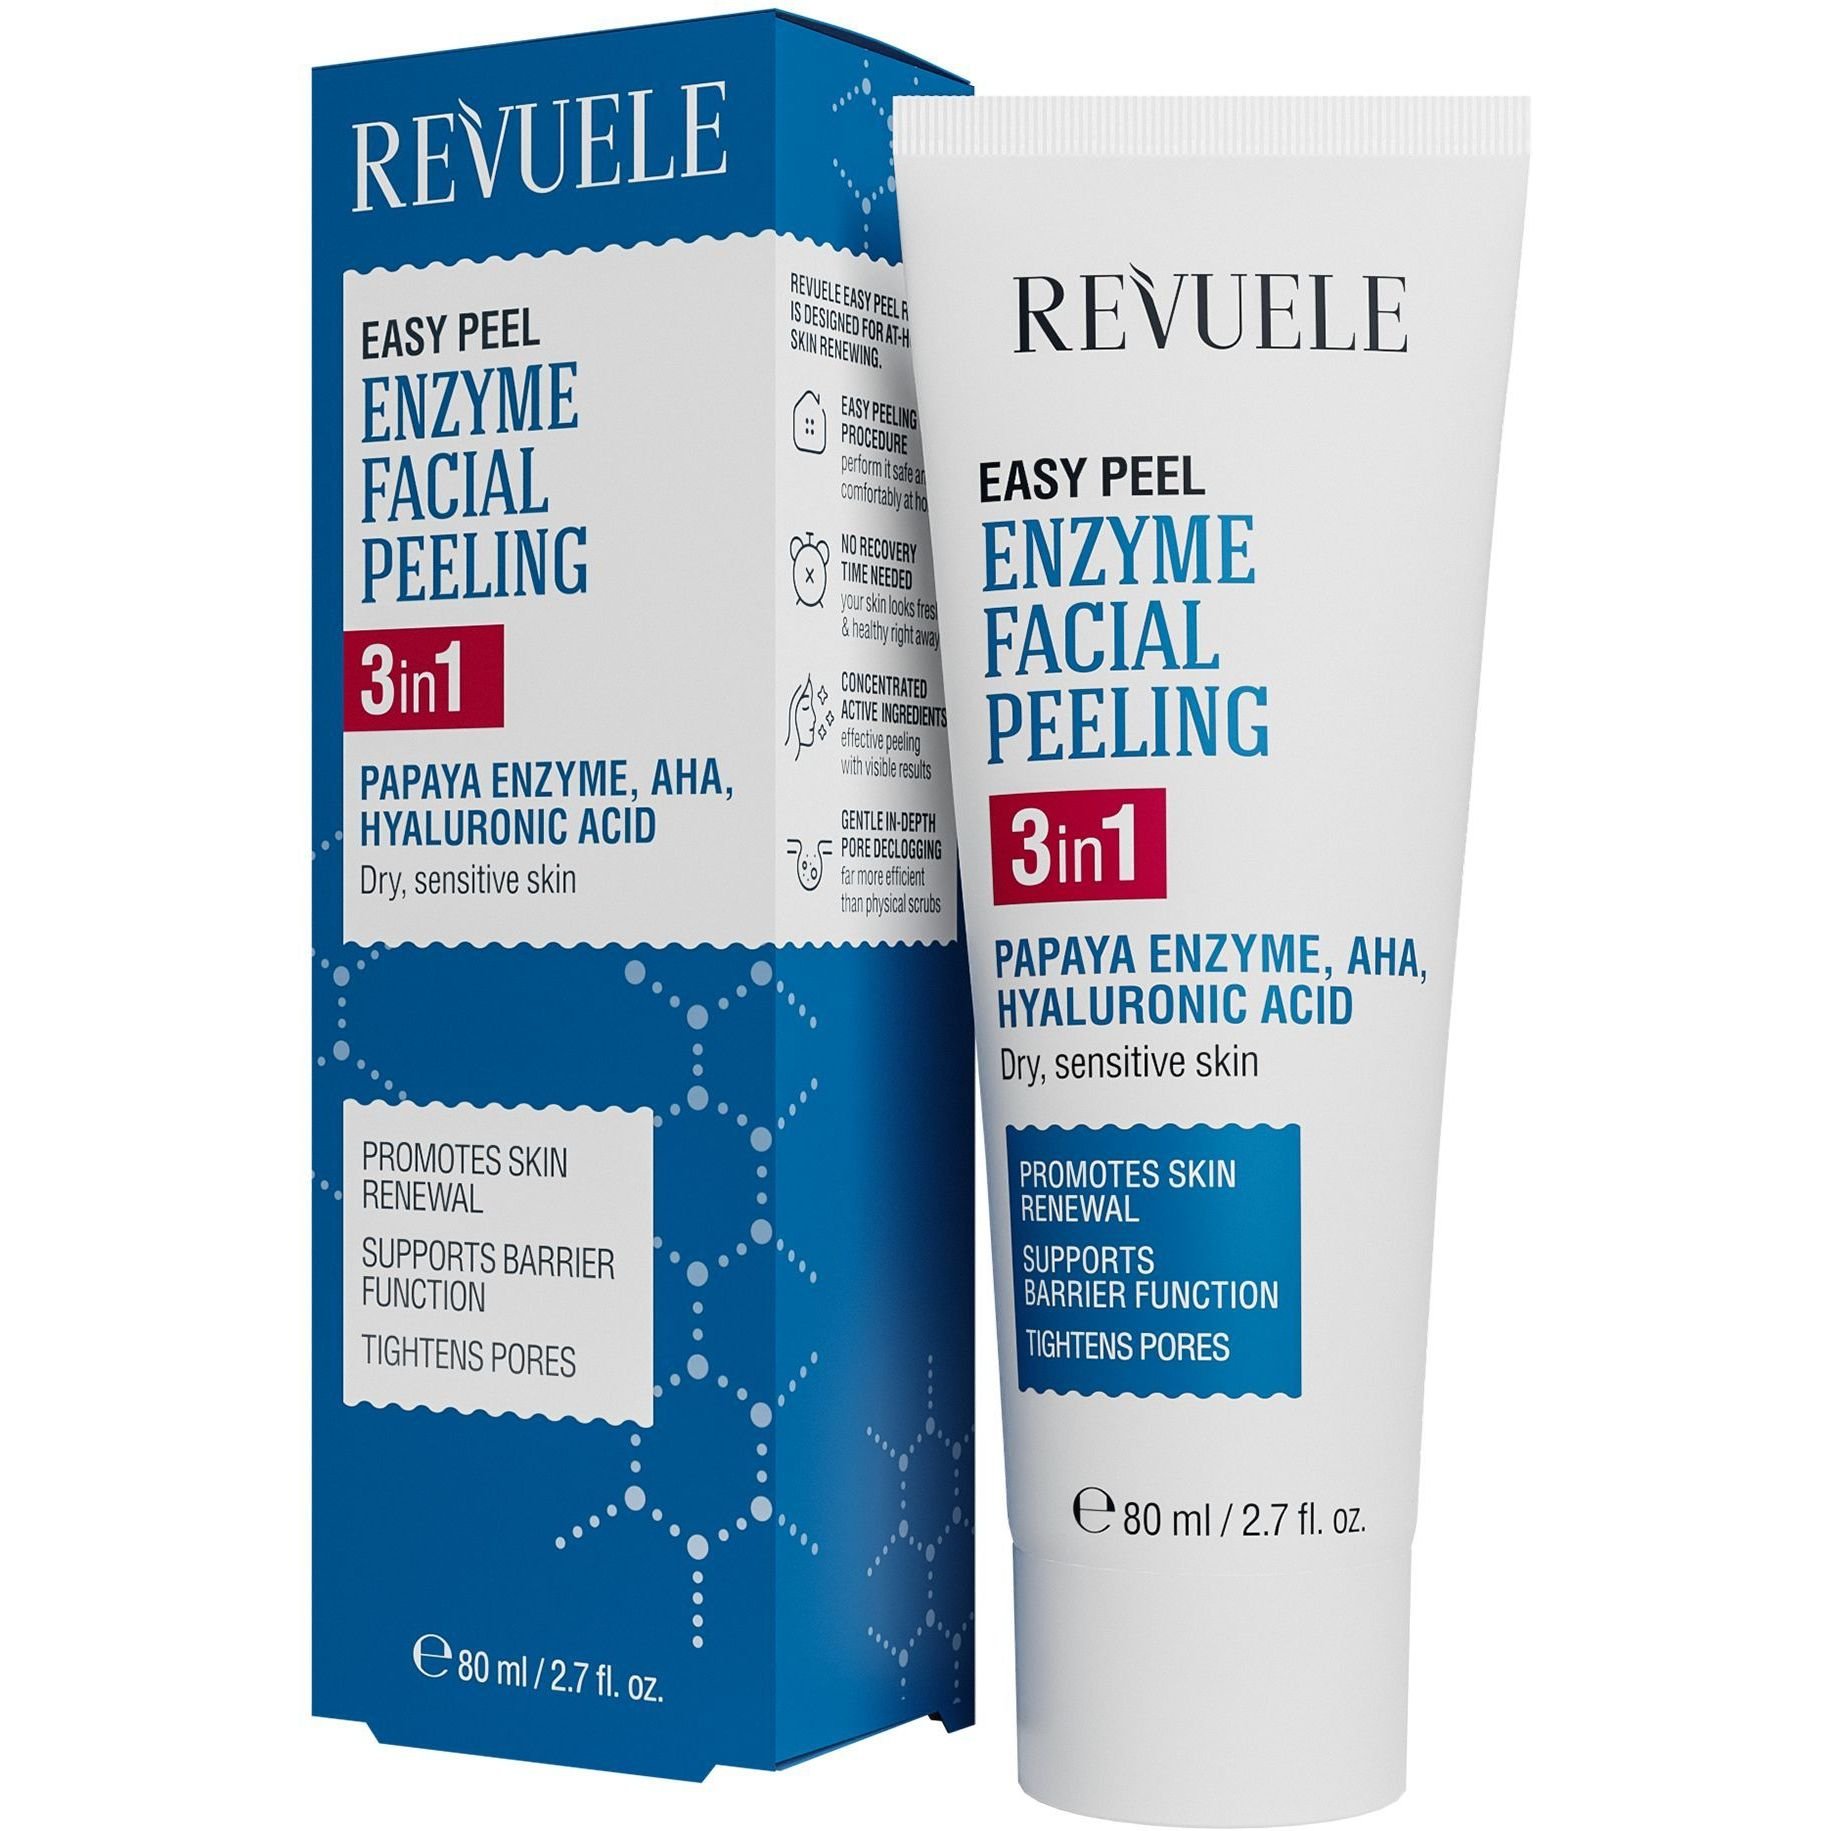 Пиллинг энзимный для лица Revuele Easy Peel Enzyme Facial Peeling 3in1, 80 мл - фото 1